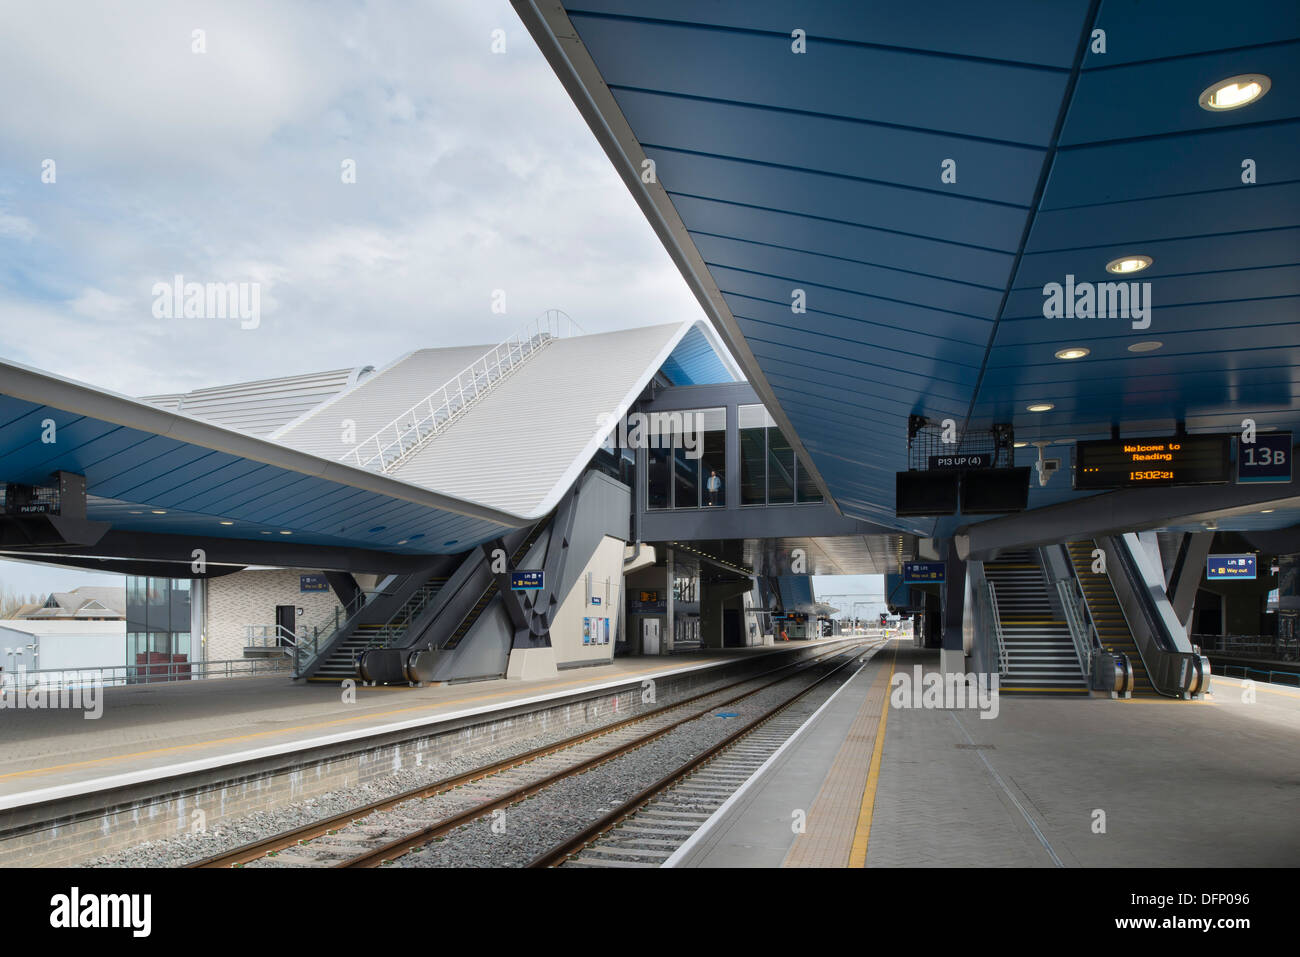 La lettura di stazione ferroviaria, Reading, Regno Unito. Architetto: Grimshaw, 2015. Prospettiva della piattaforma con le vie e tetti inclinati Foto Stock